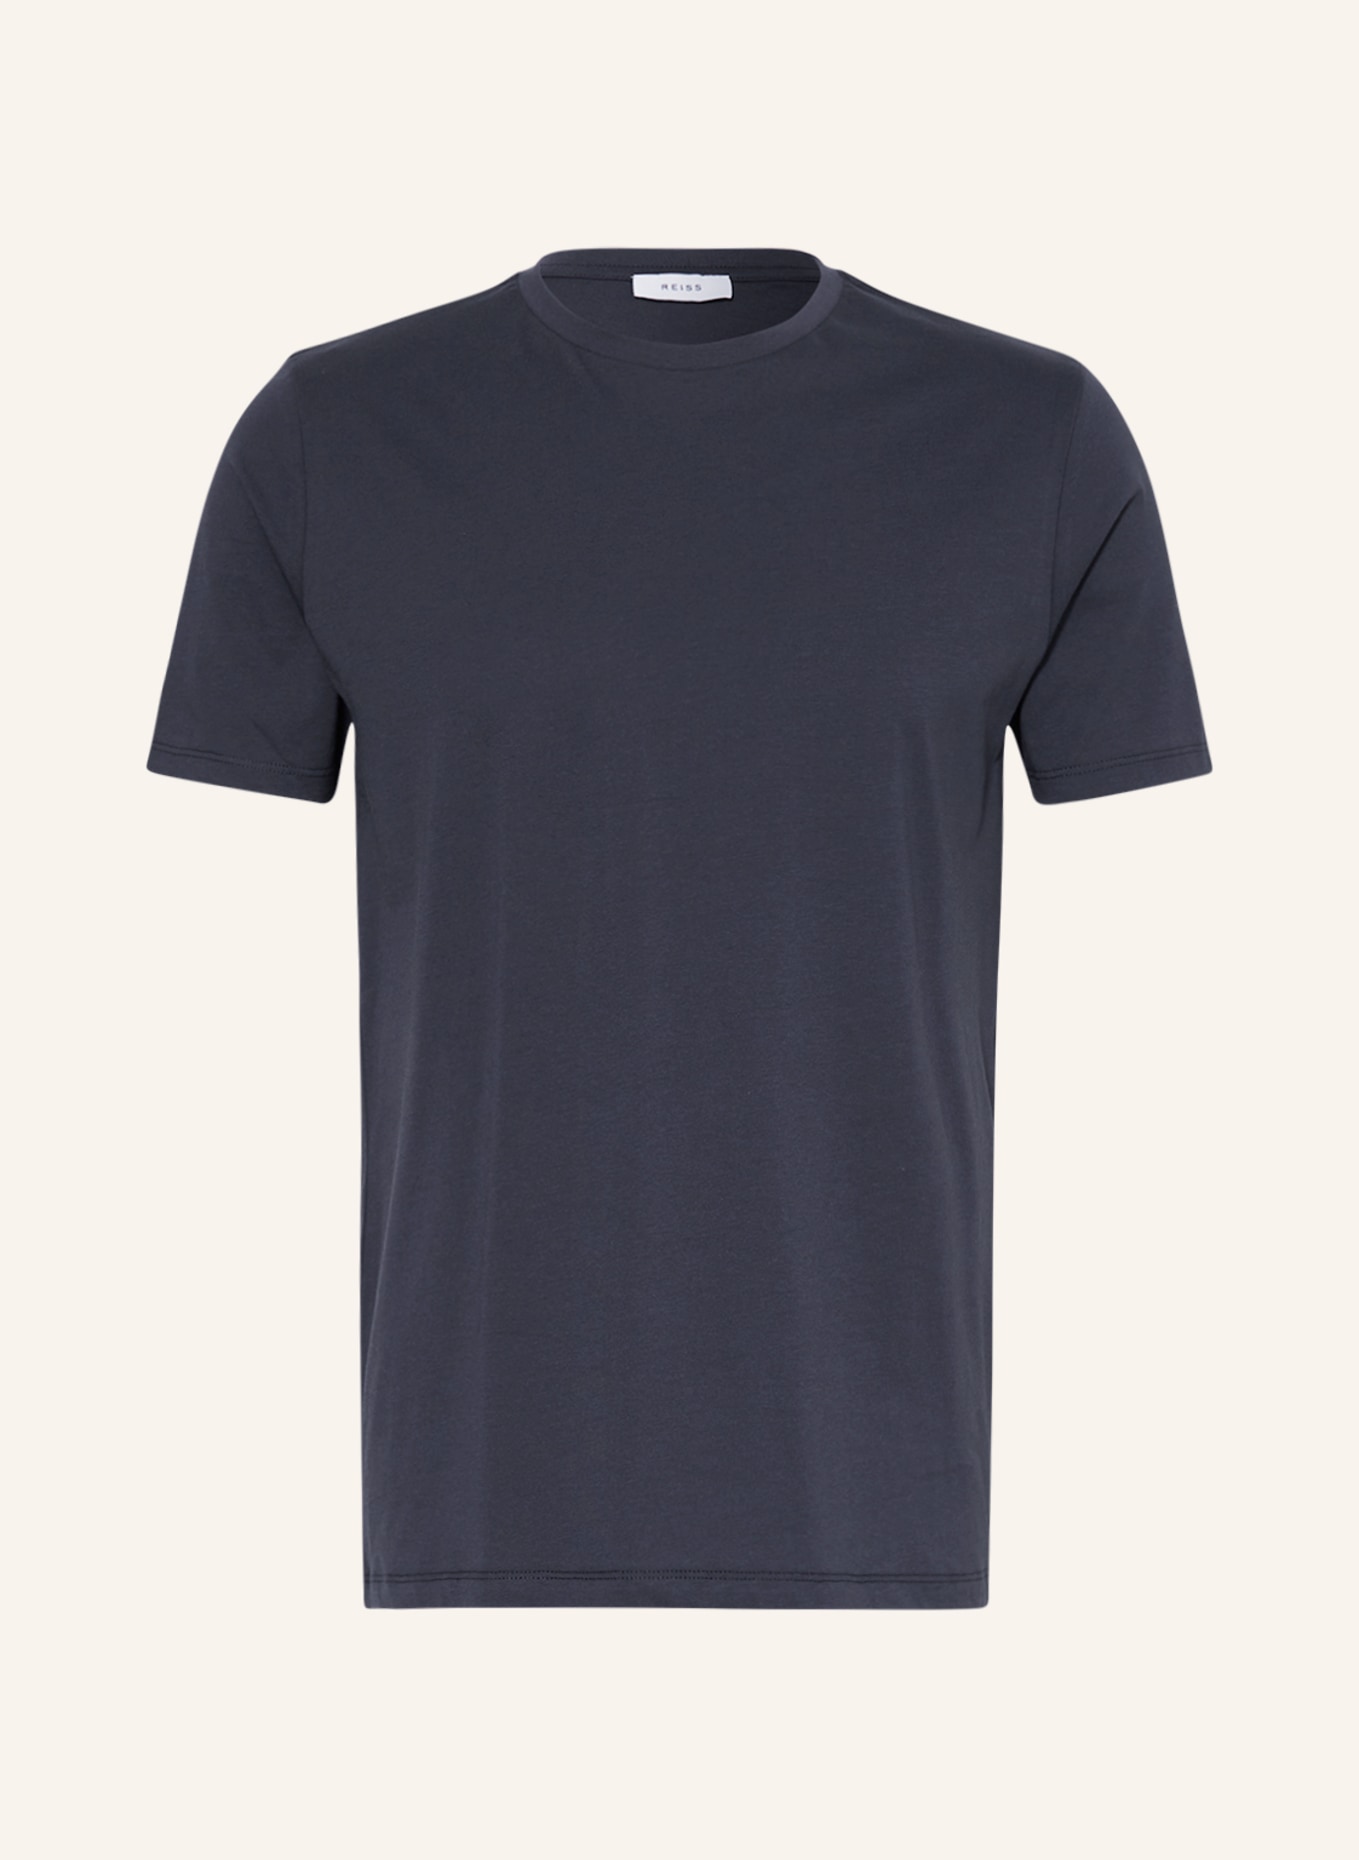 REISS T-Shirt BLESS, Farbe: DUNKELBLAU (Bild 1)